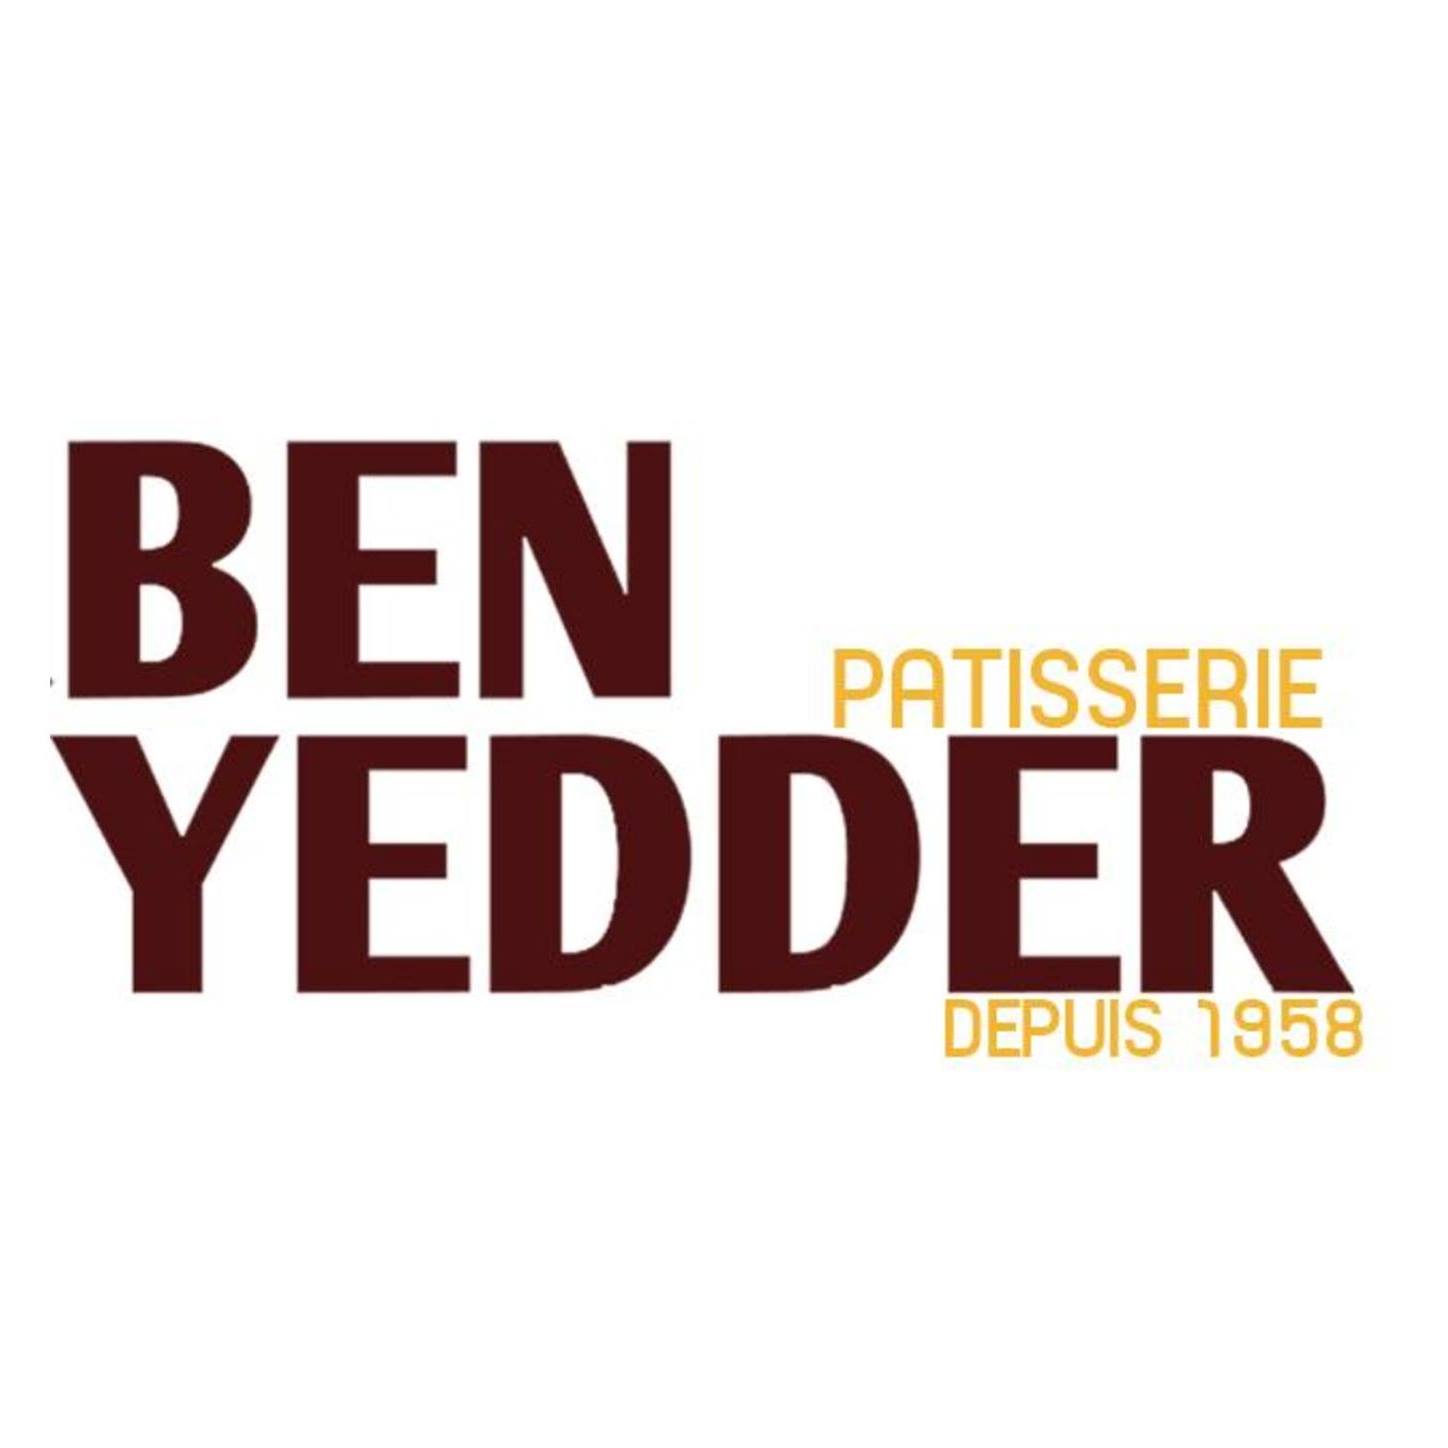 BEN YEDDER